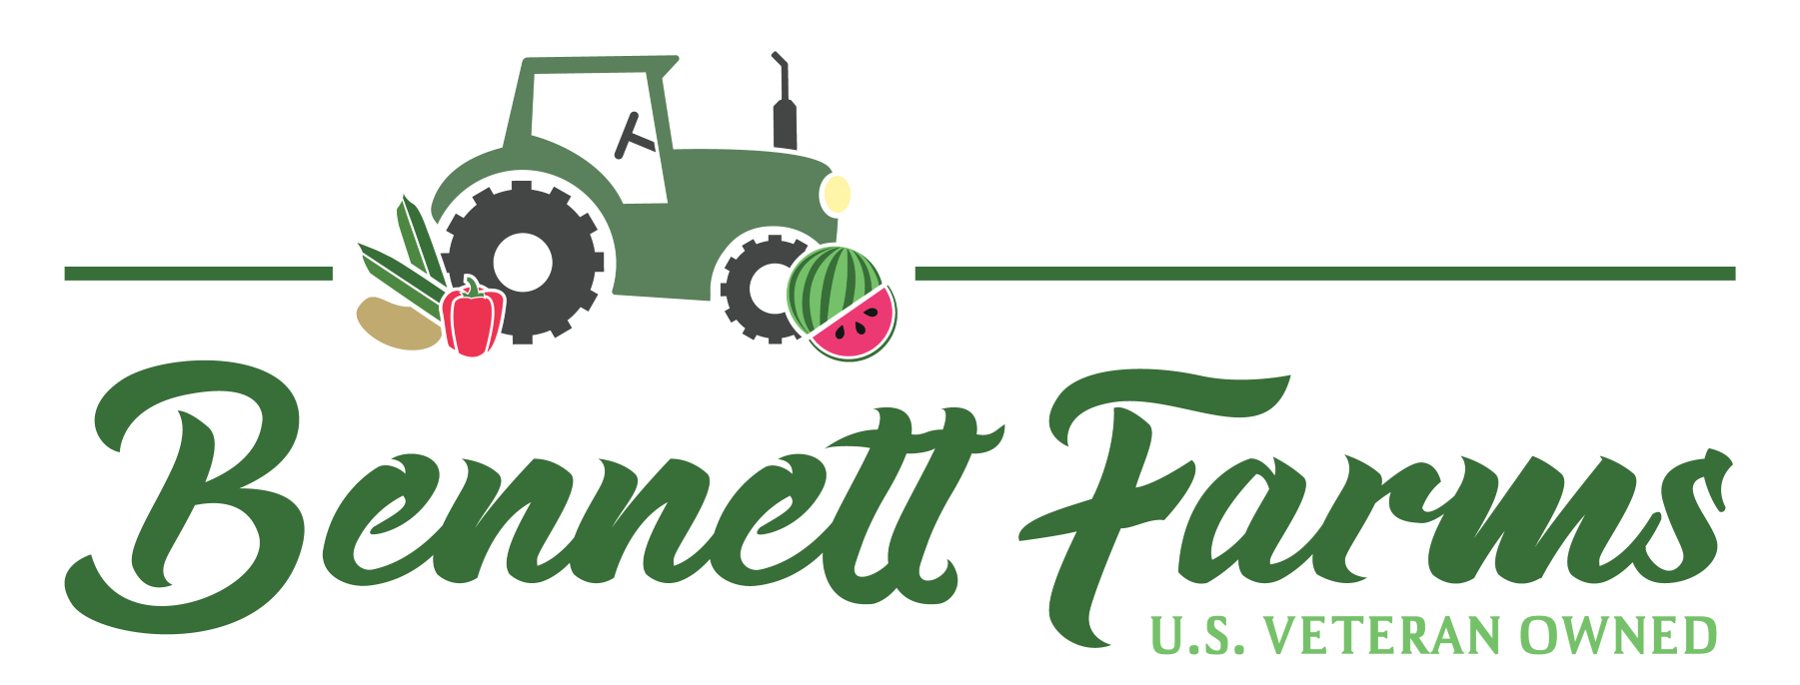 Bennett Farms